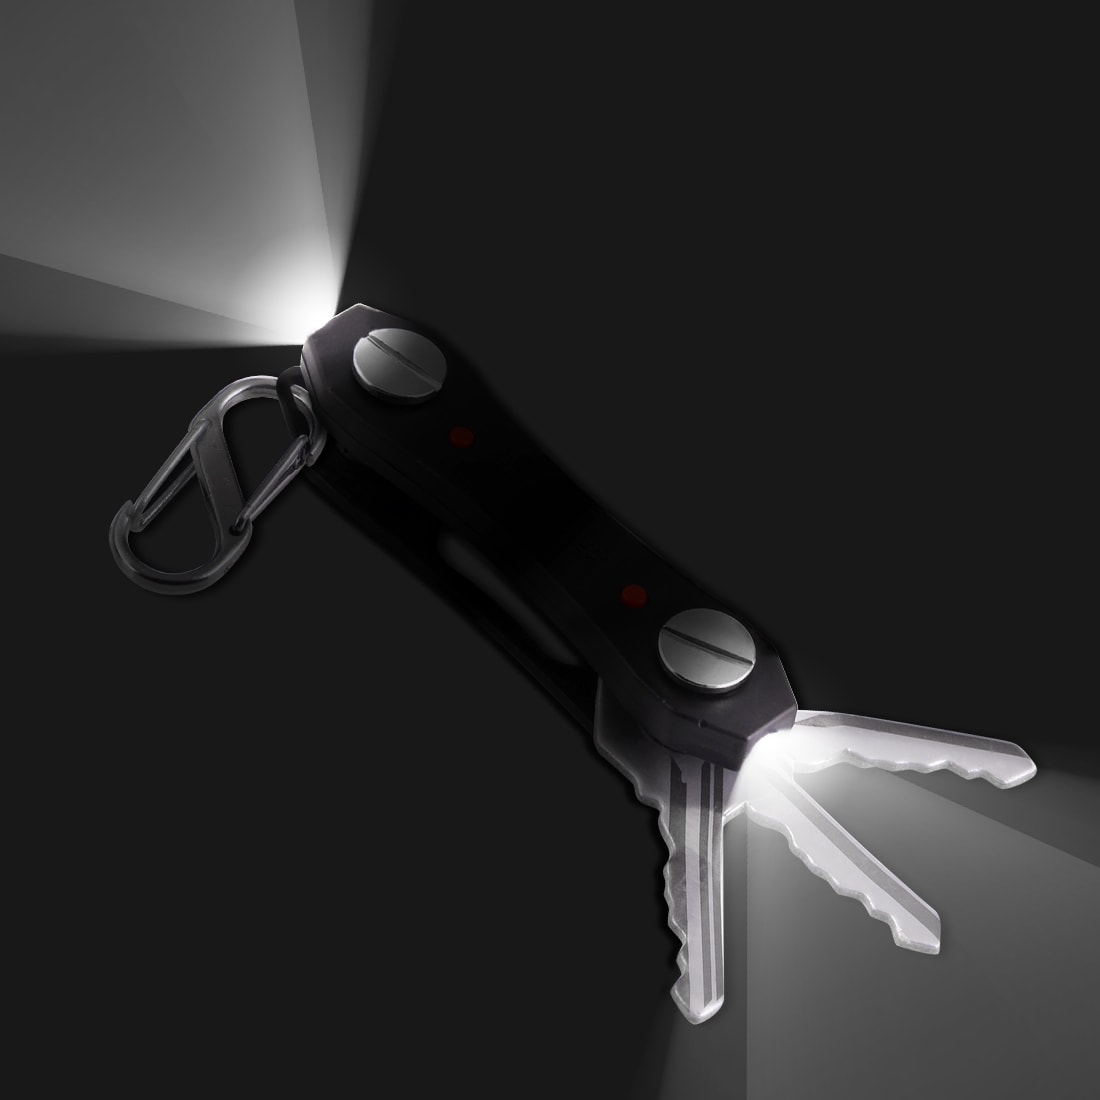 Nøkkelknippe med lampe og flaskeåpner